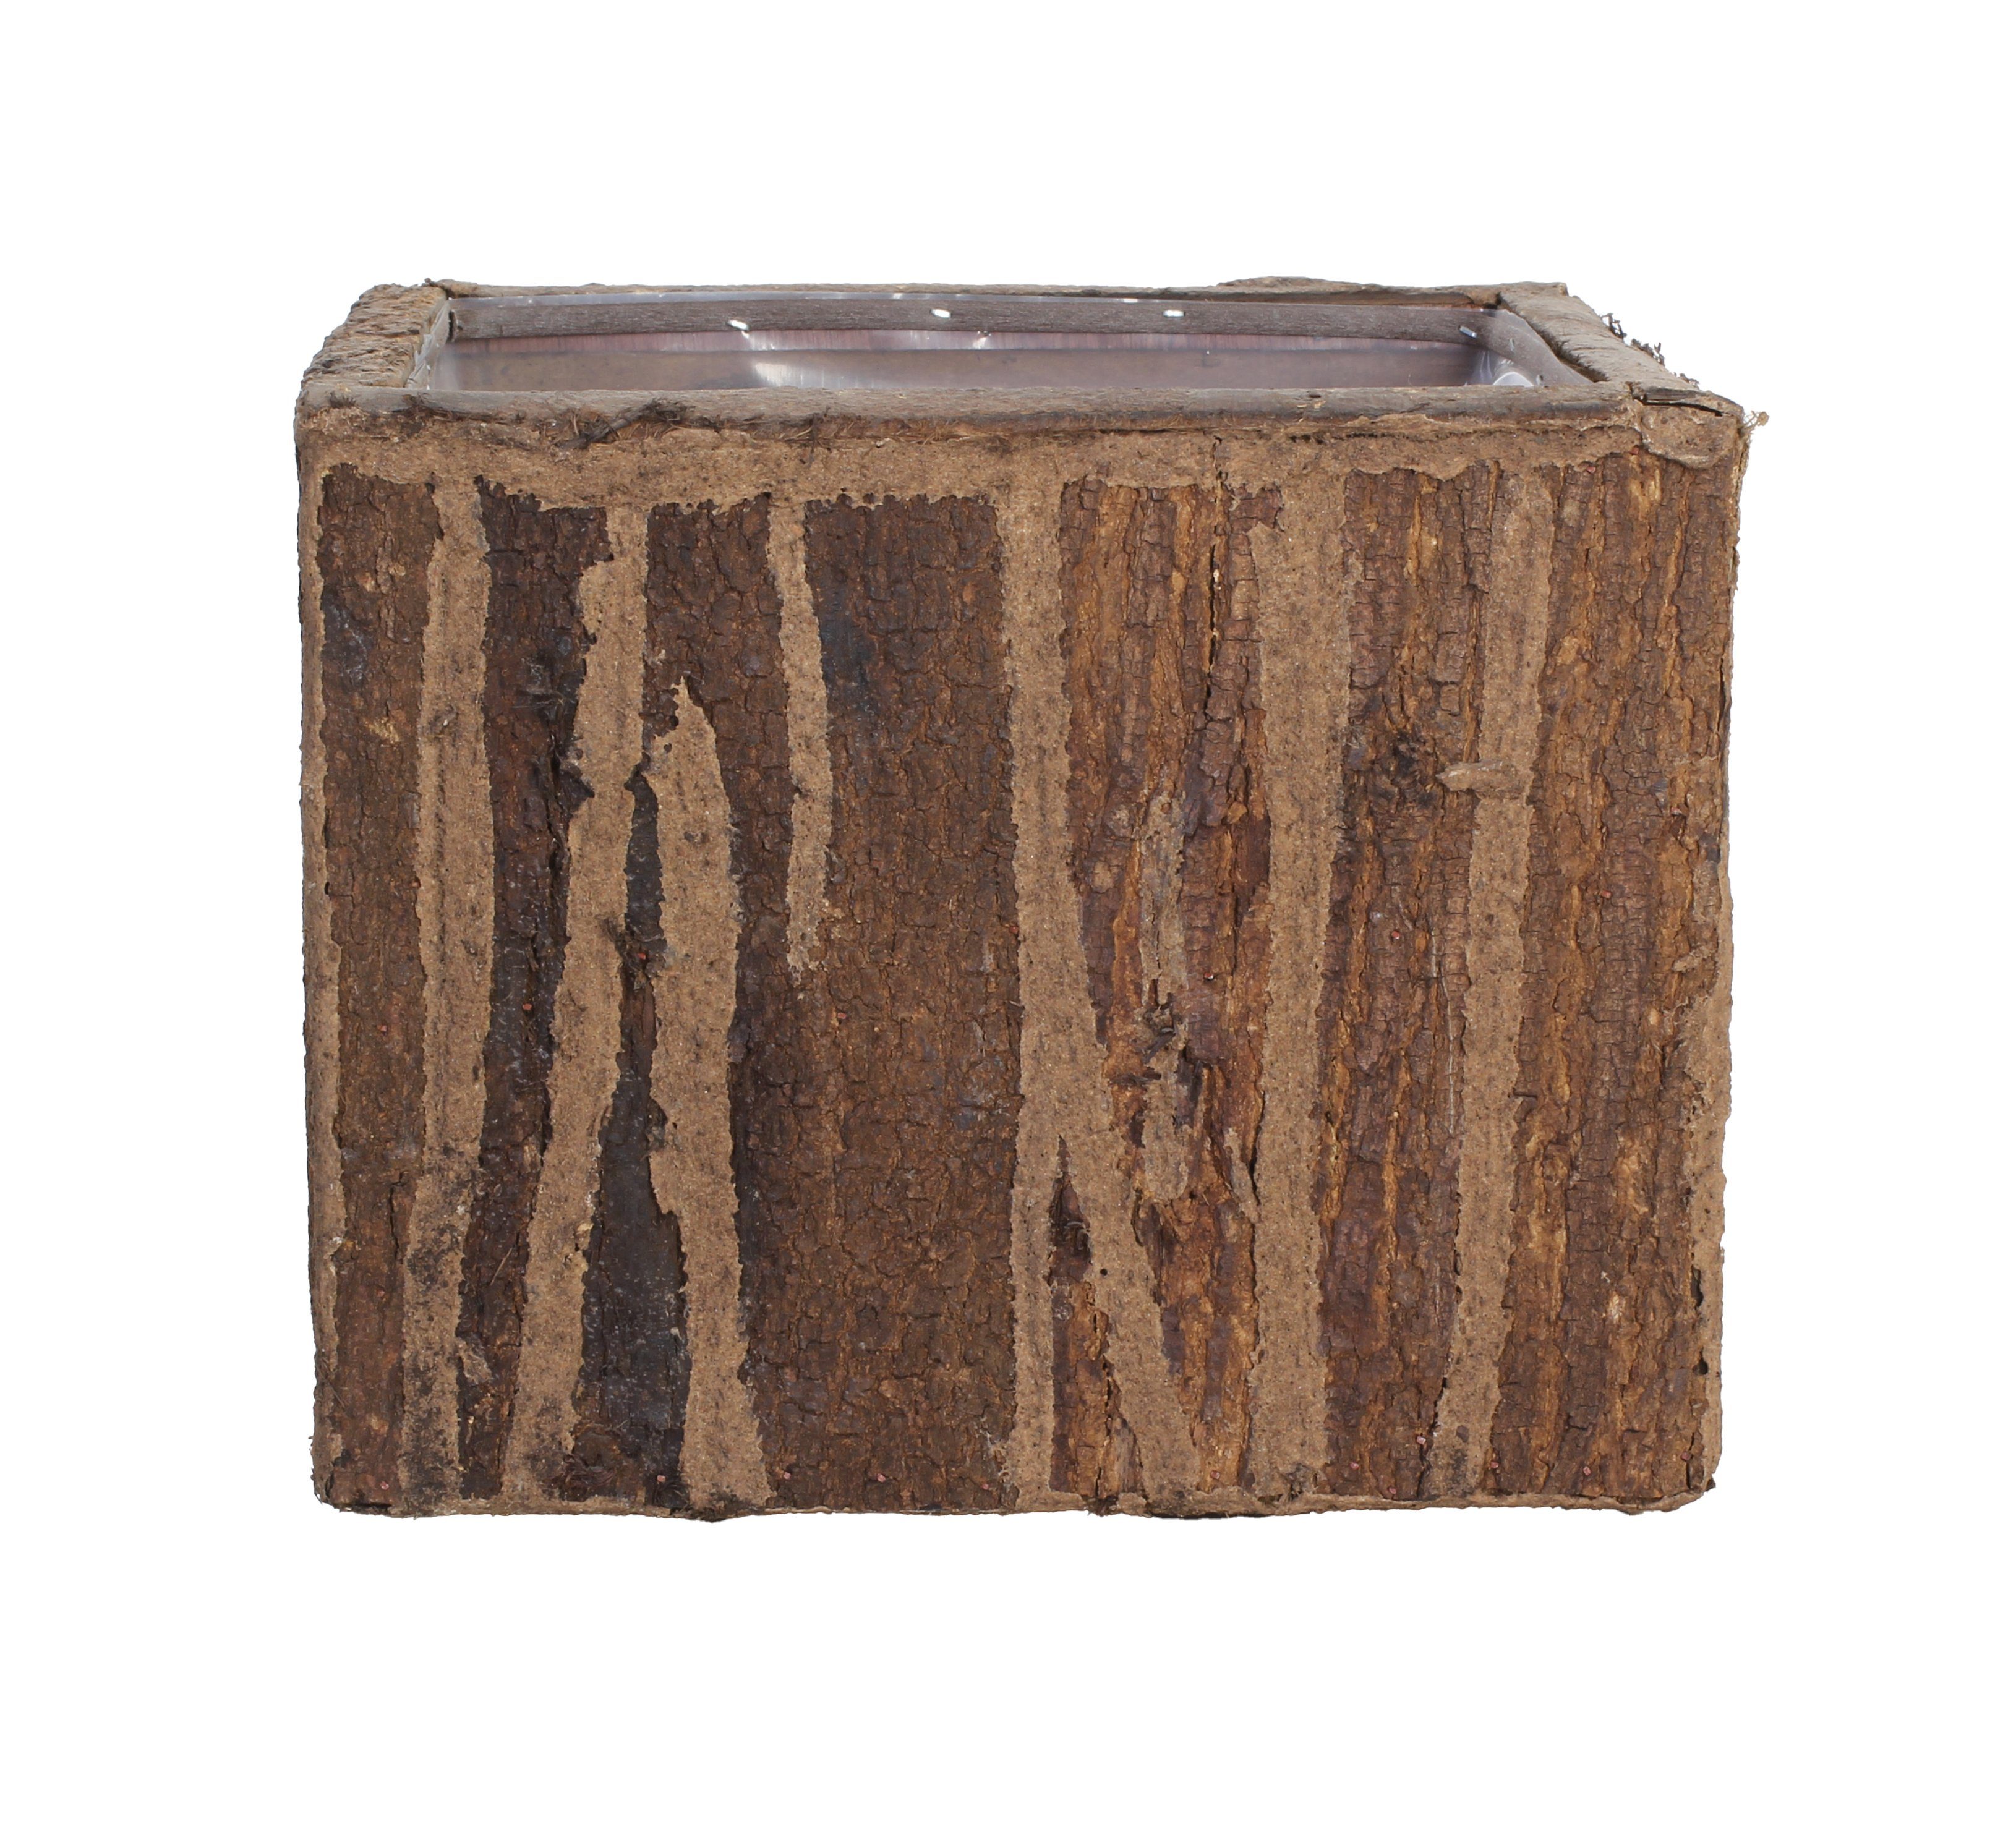 tegawo Blumentopf Wood Skin, aus Holz, mit Baum-Rinde, quadratisch, foliert 25 x 25 x 25cm braun